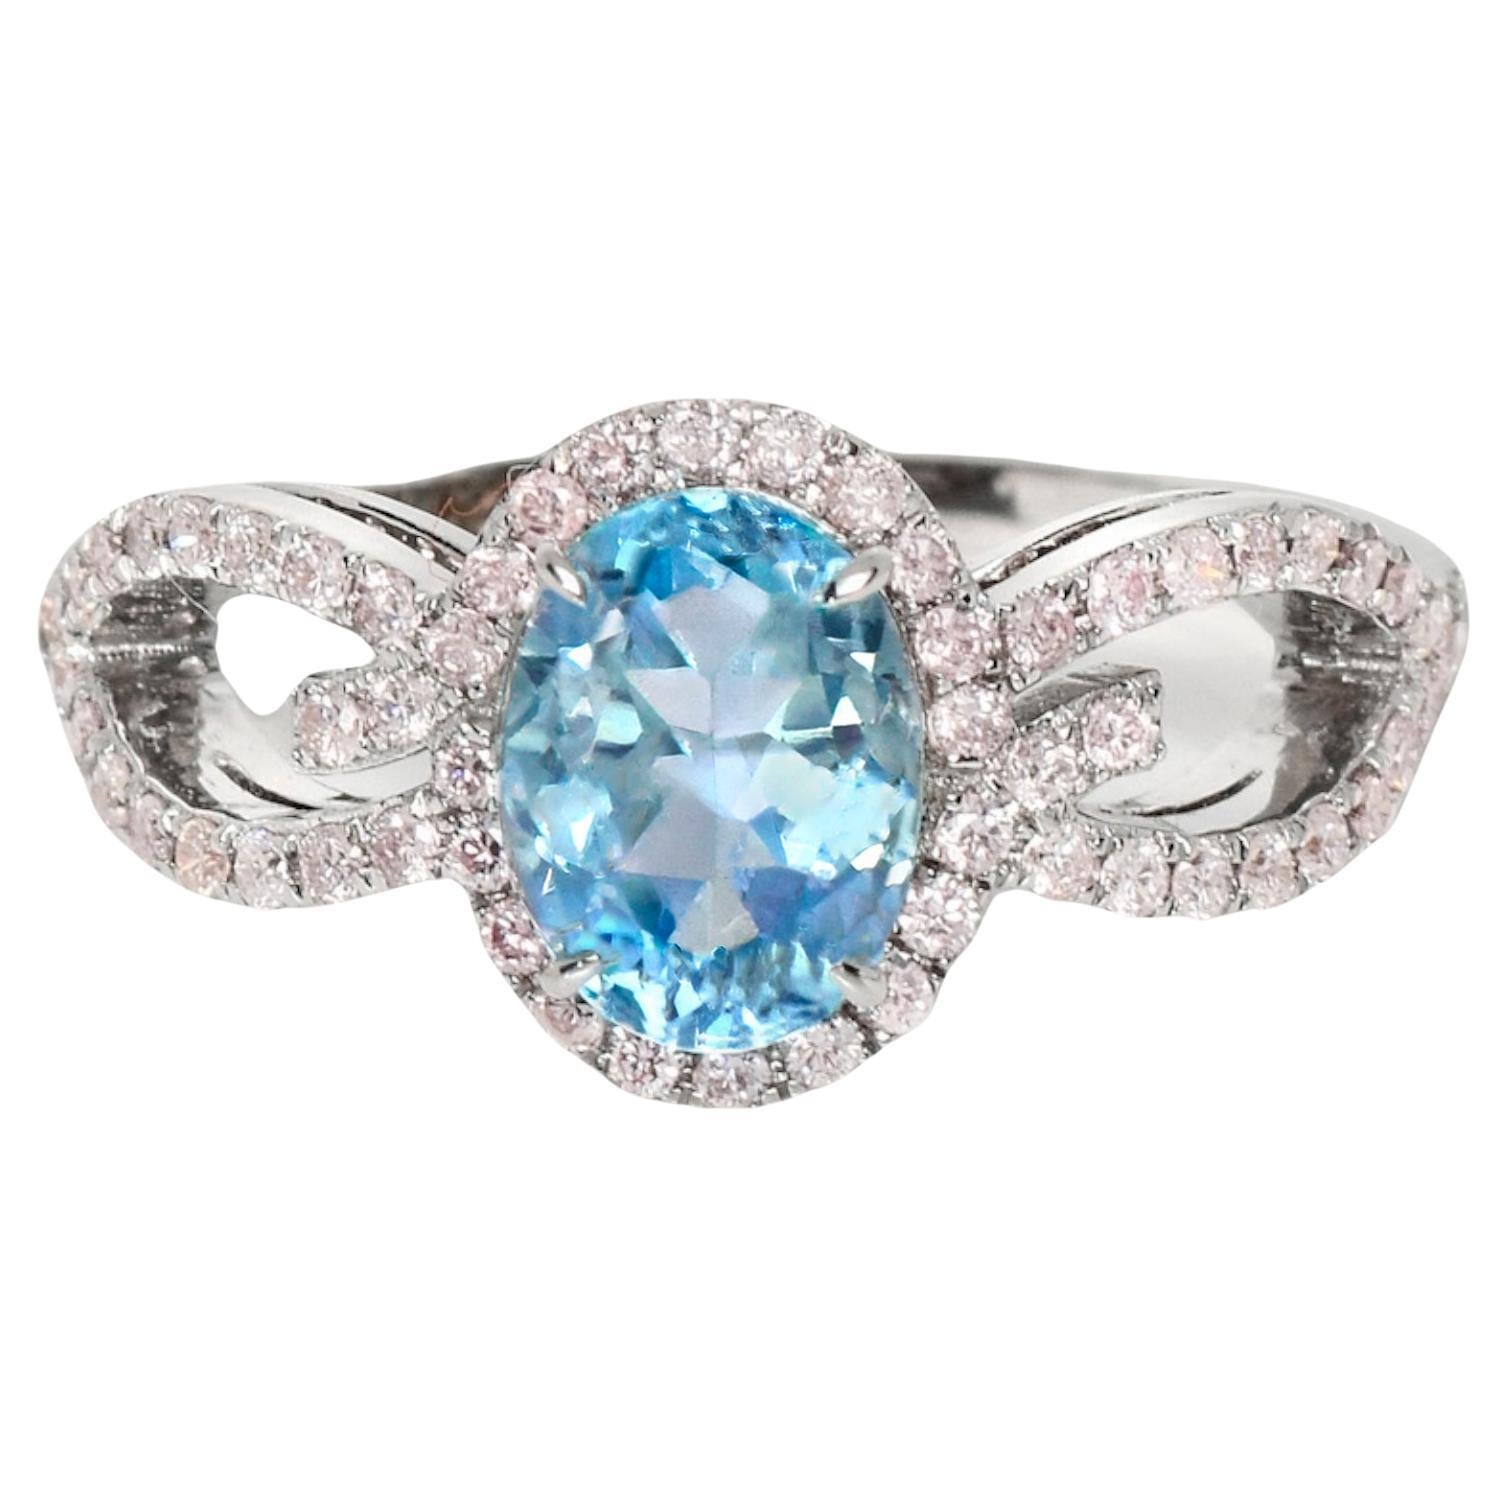 IGI 14K 1.09 Ct Aquamarine&Pink Diamonds Antique Art Deco Style Engagement Ring